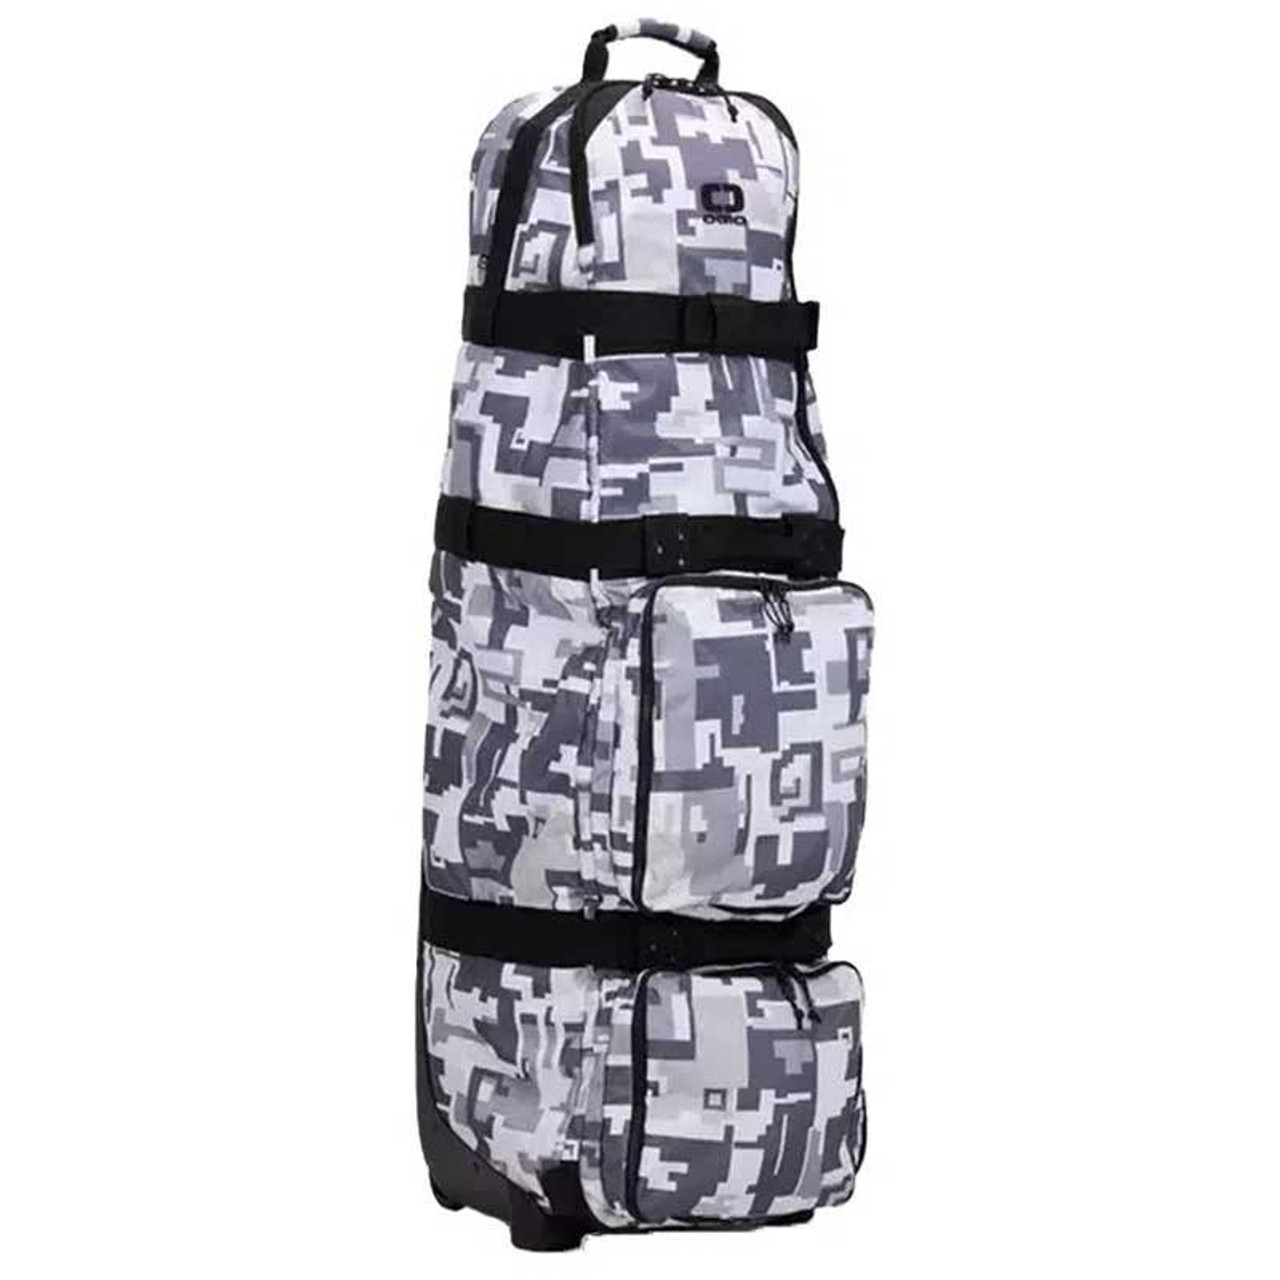 OGIO Alpha Travel Bag Max - Cyber Camo